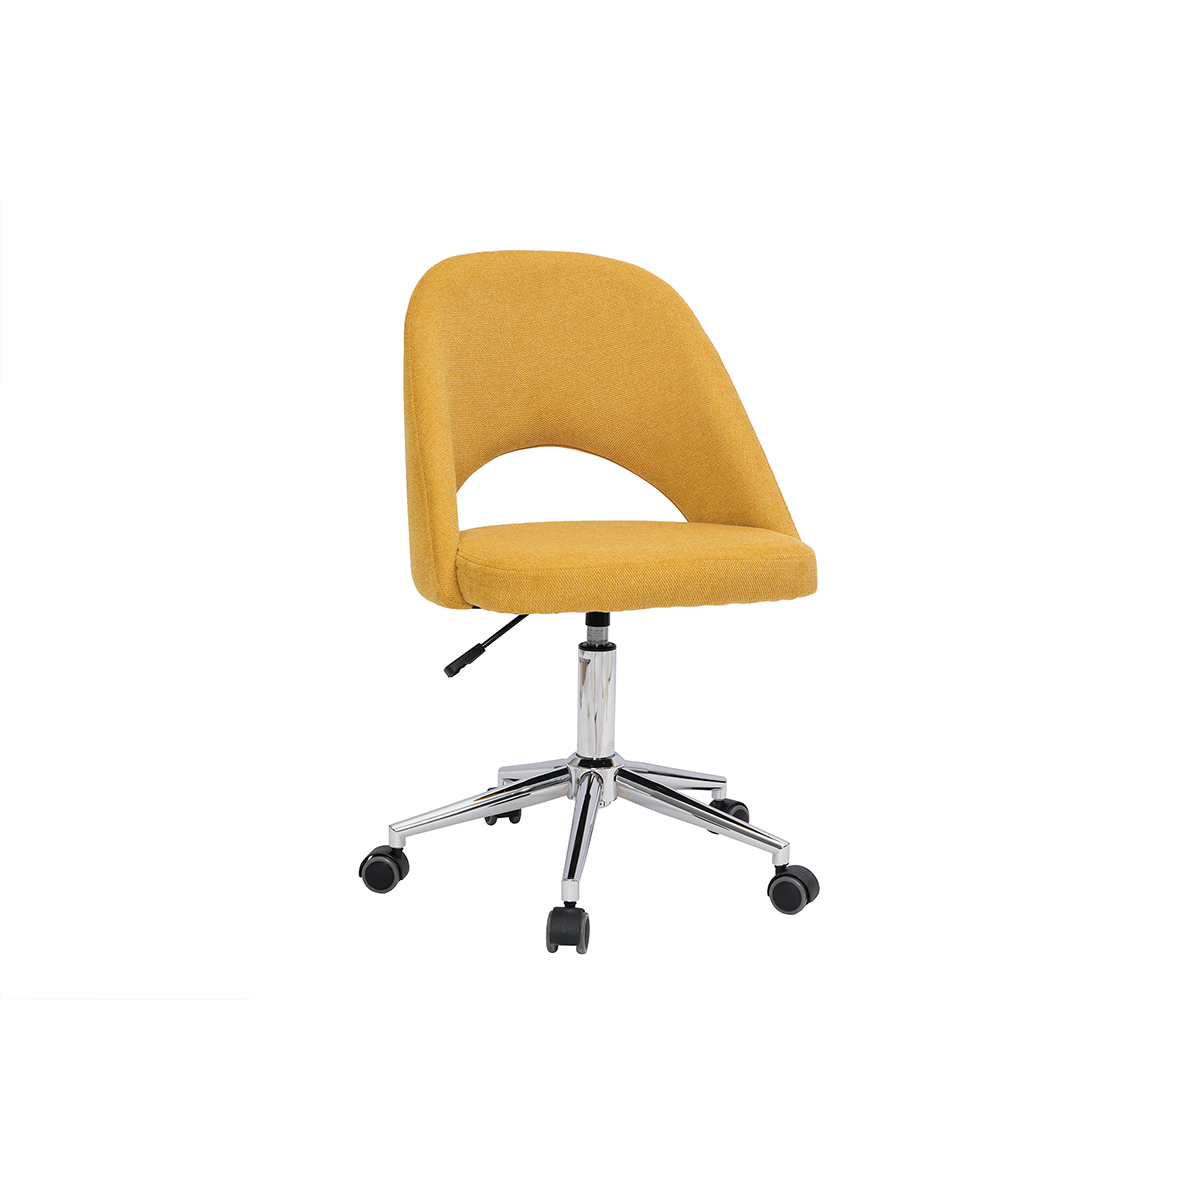 Chaise de bureau en tissu effet velours texturé jaune moutarde et pied chromé COSETTE vue1